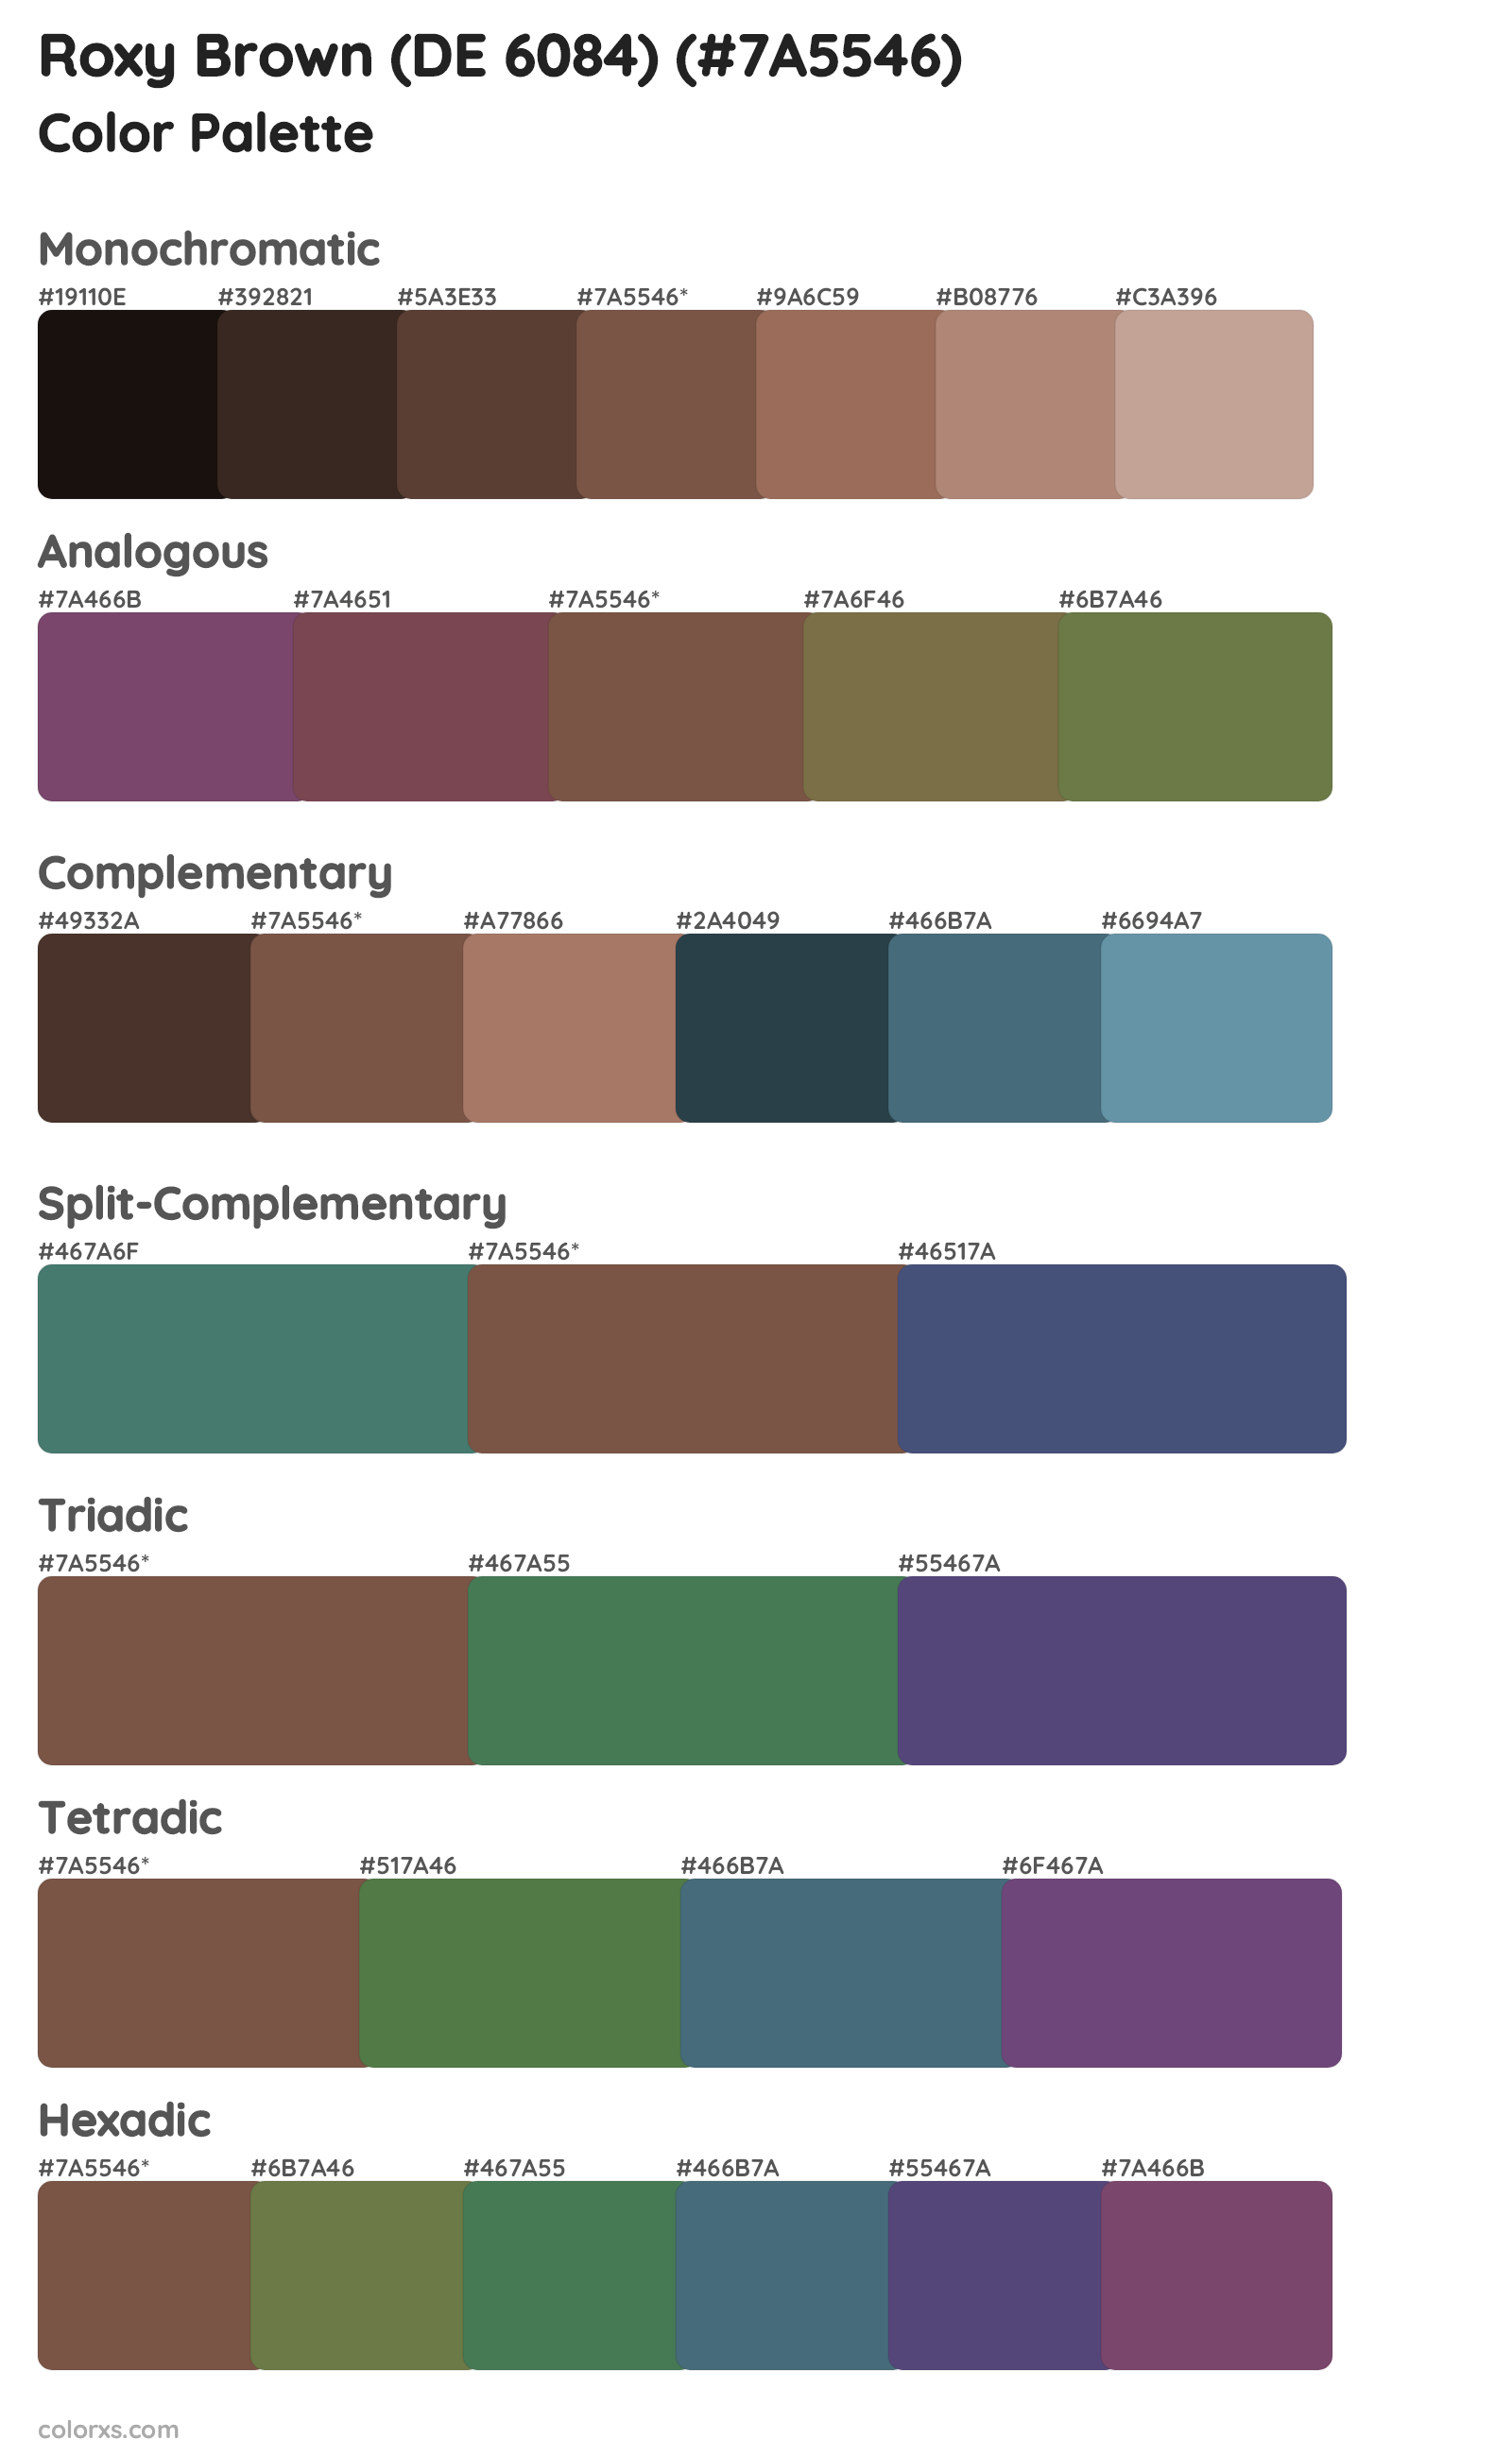 Roxy Brown (DE 6084) Color Scheme Palettes